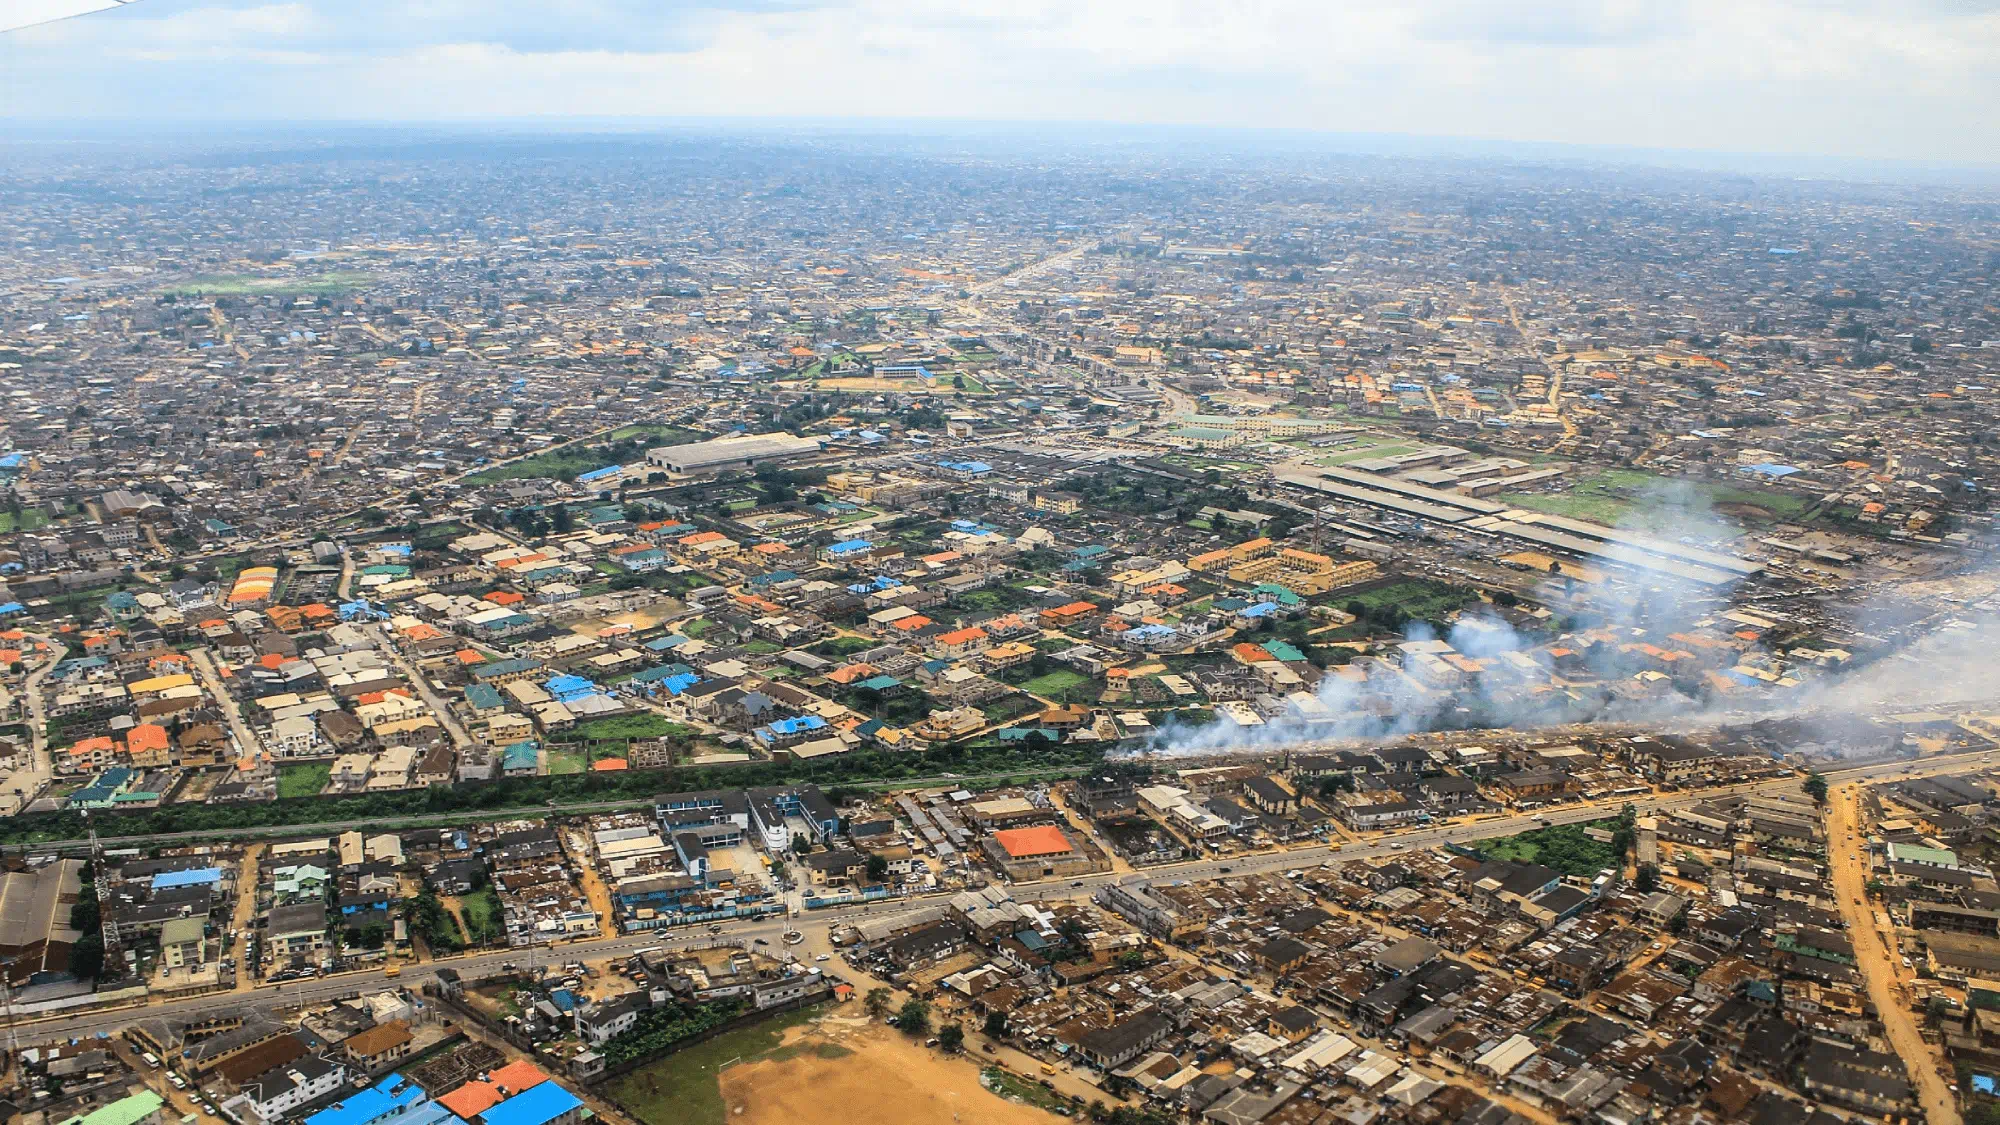 Aerial view of Dar es Salaam. 